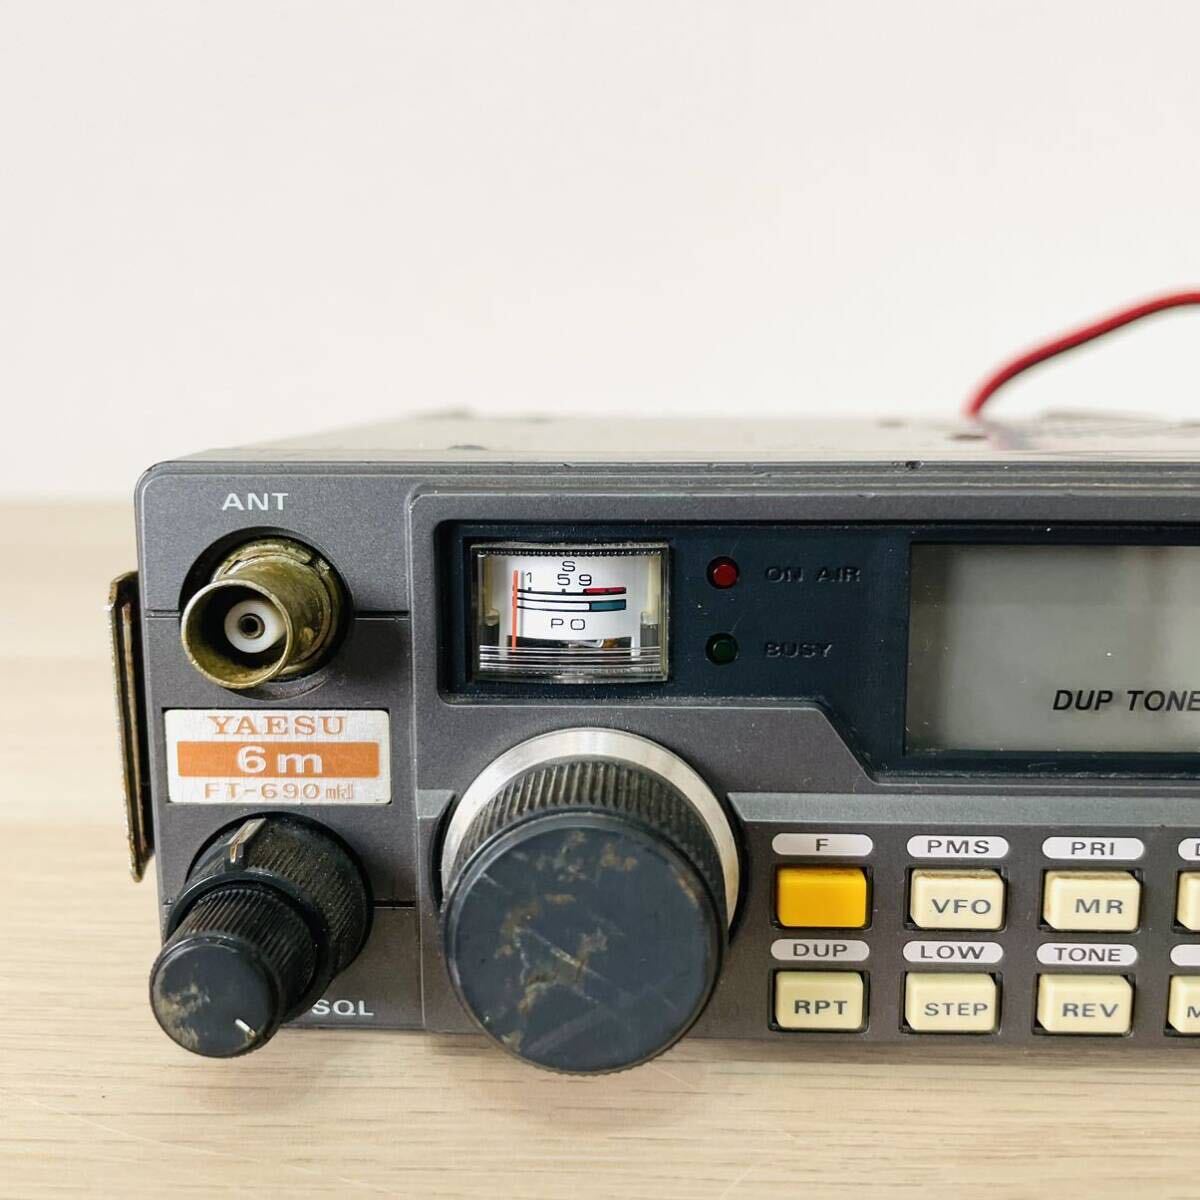 YAESU FT-690 mk2 радиолюбительская связь all mode приемопередатчик Yaesu беспроводной 